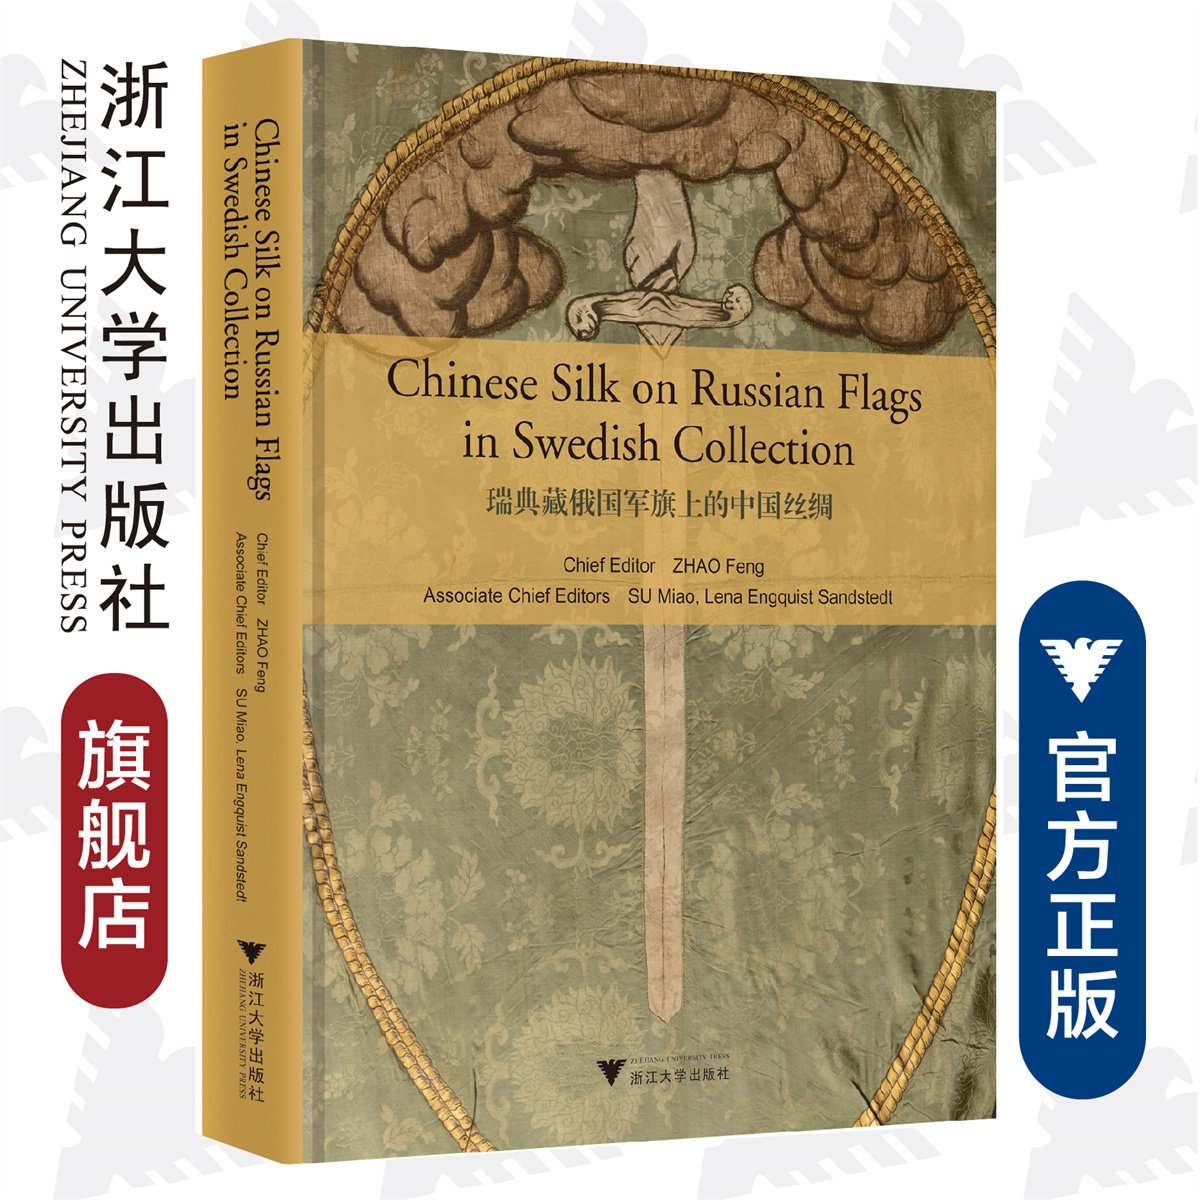 【直发】瑞典藏俄国军旗上的中国丝绸（Chinese Silk on Russian Military Flags in Swedish Collection）